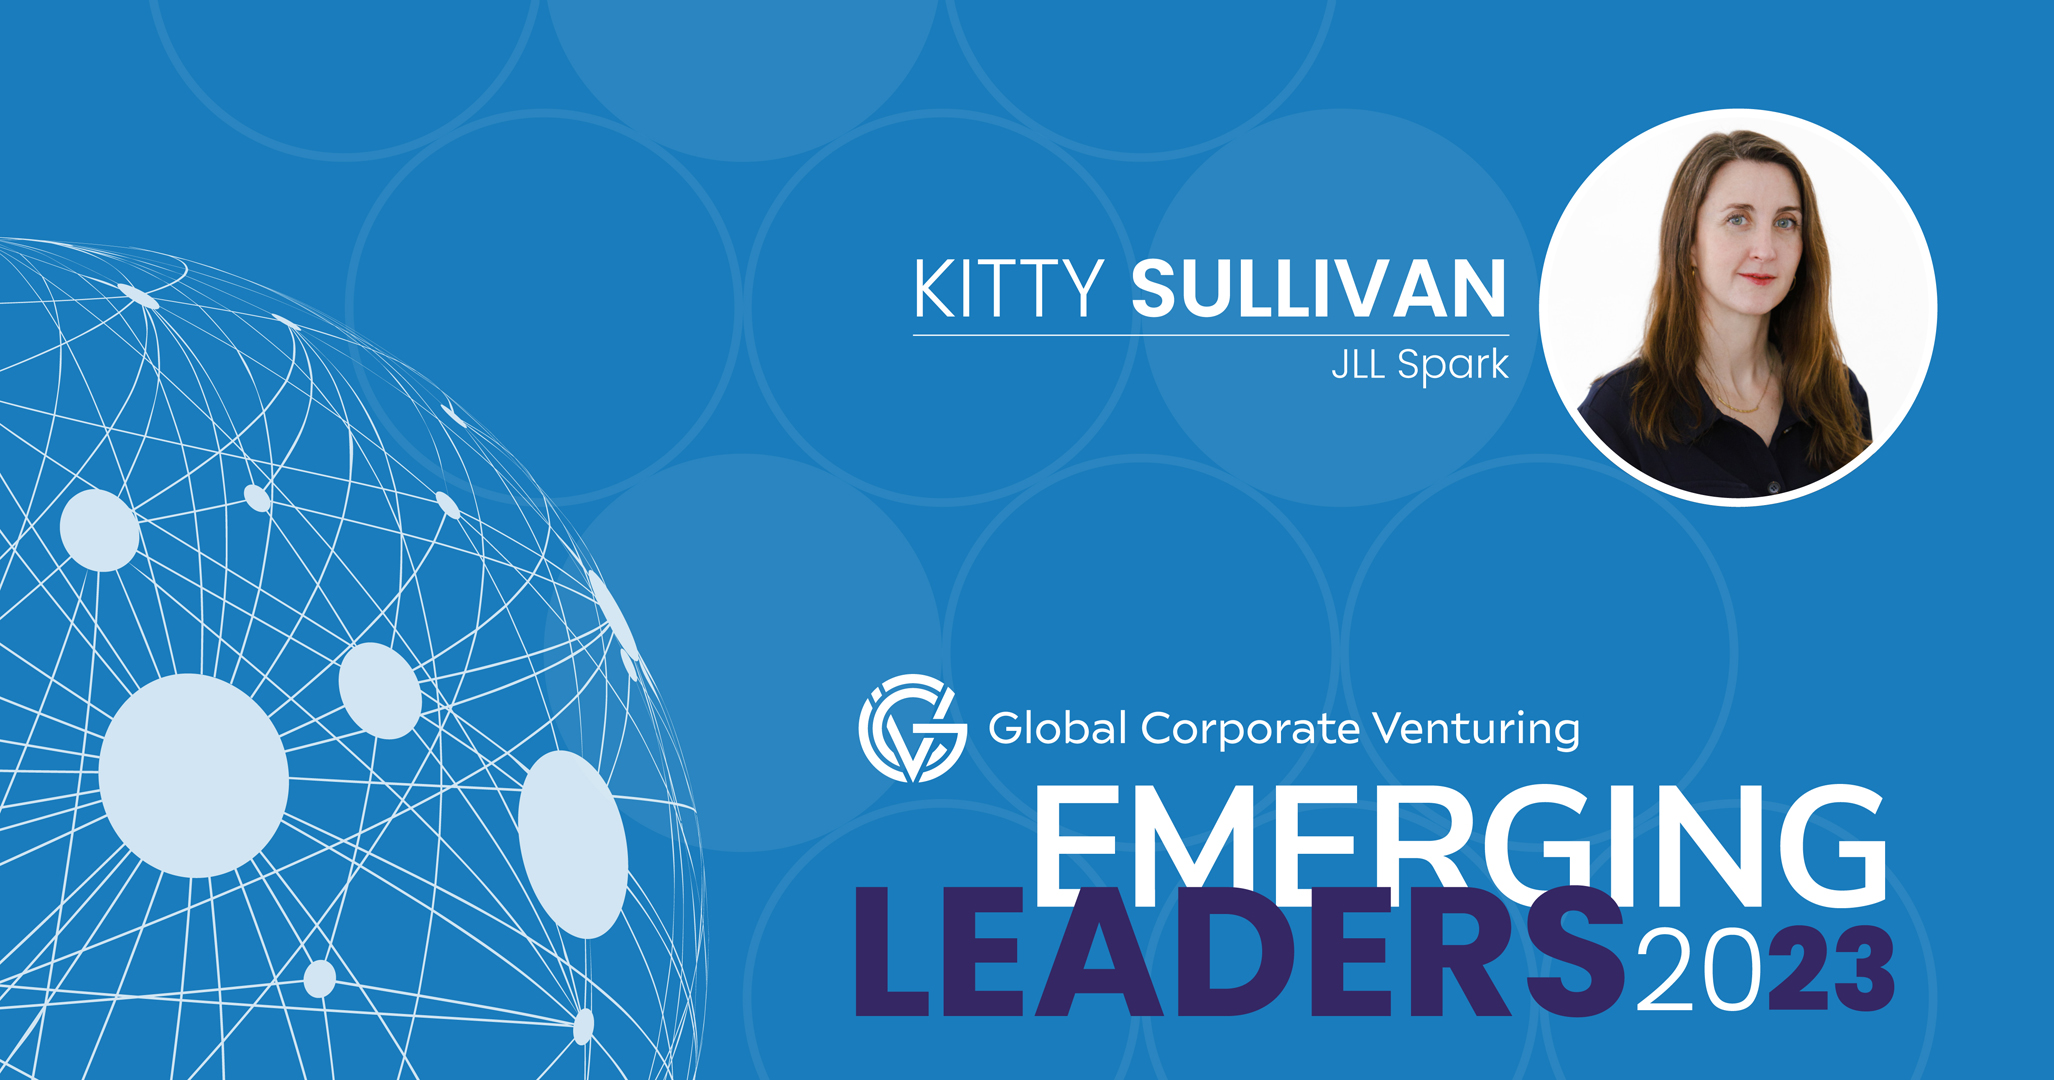 Kitty Sullivan, JLL Spark Emerging Leaders